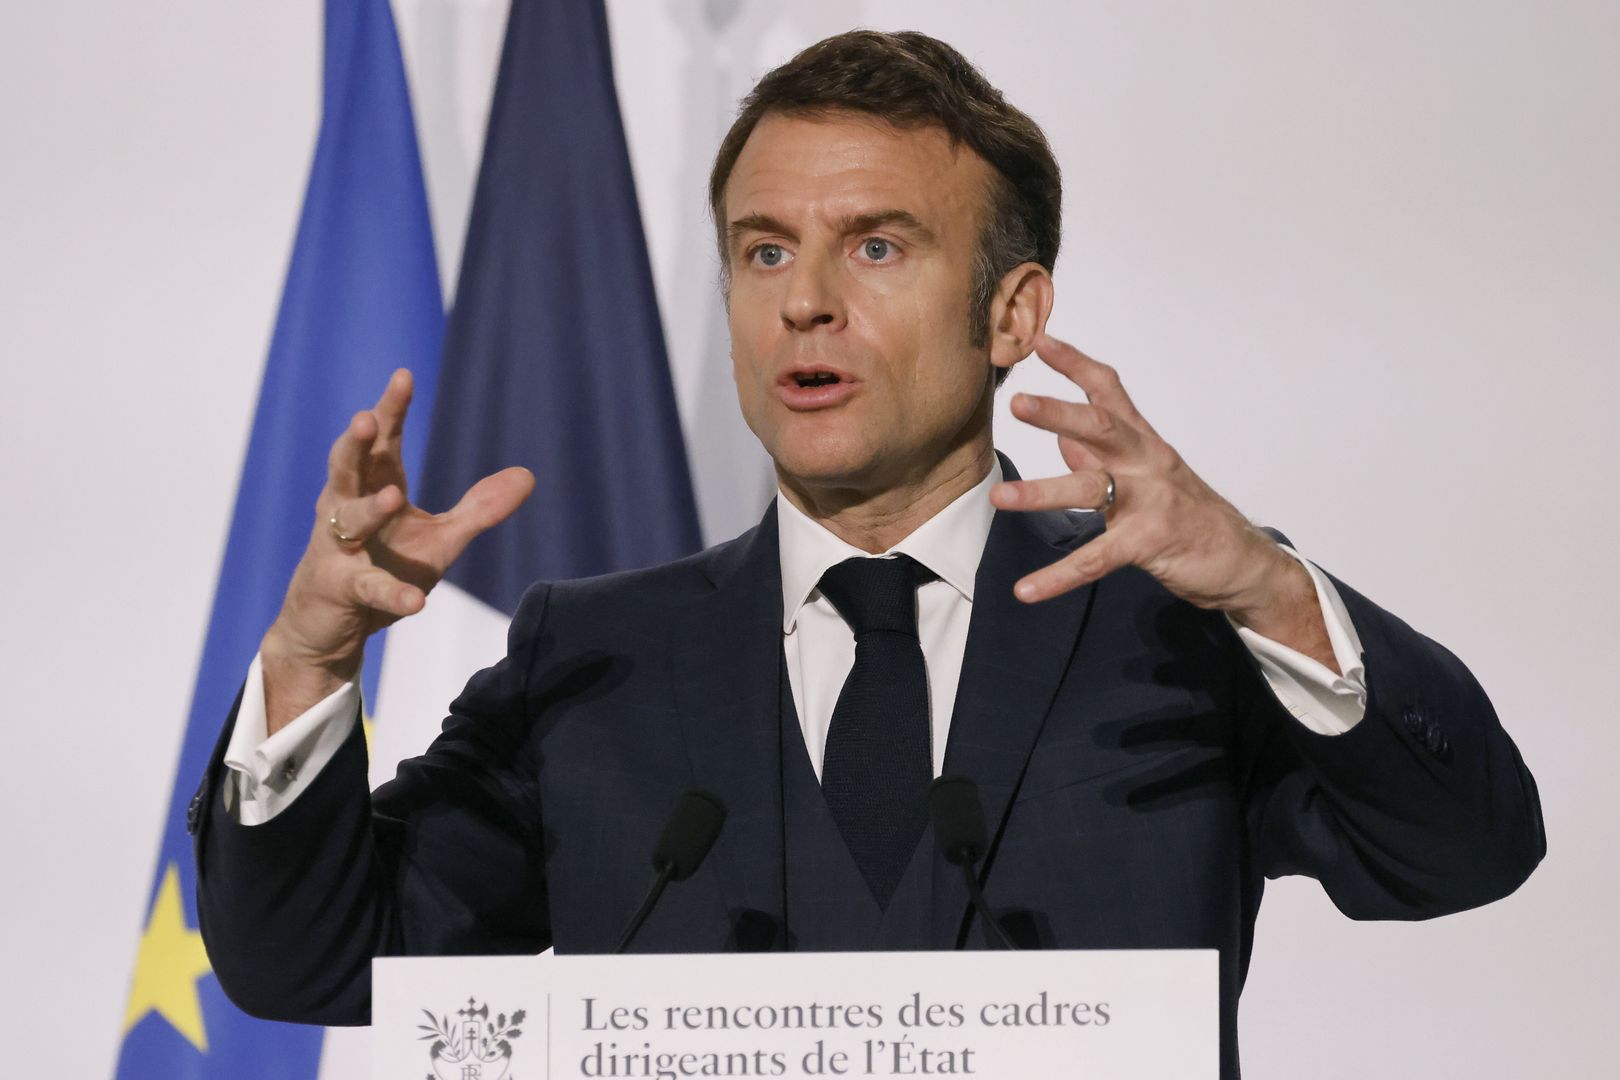 Emmanuel Macron zapowiada projekt ustawy o eutanazji. "Pomoc w umieraniu"